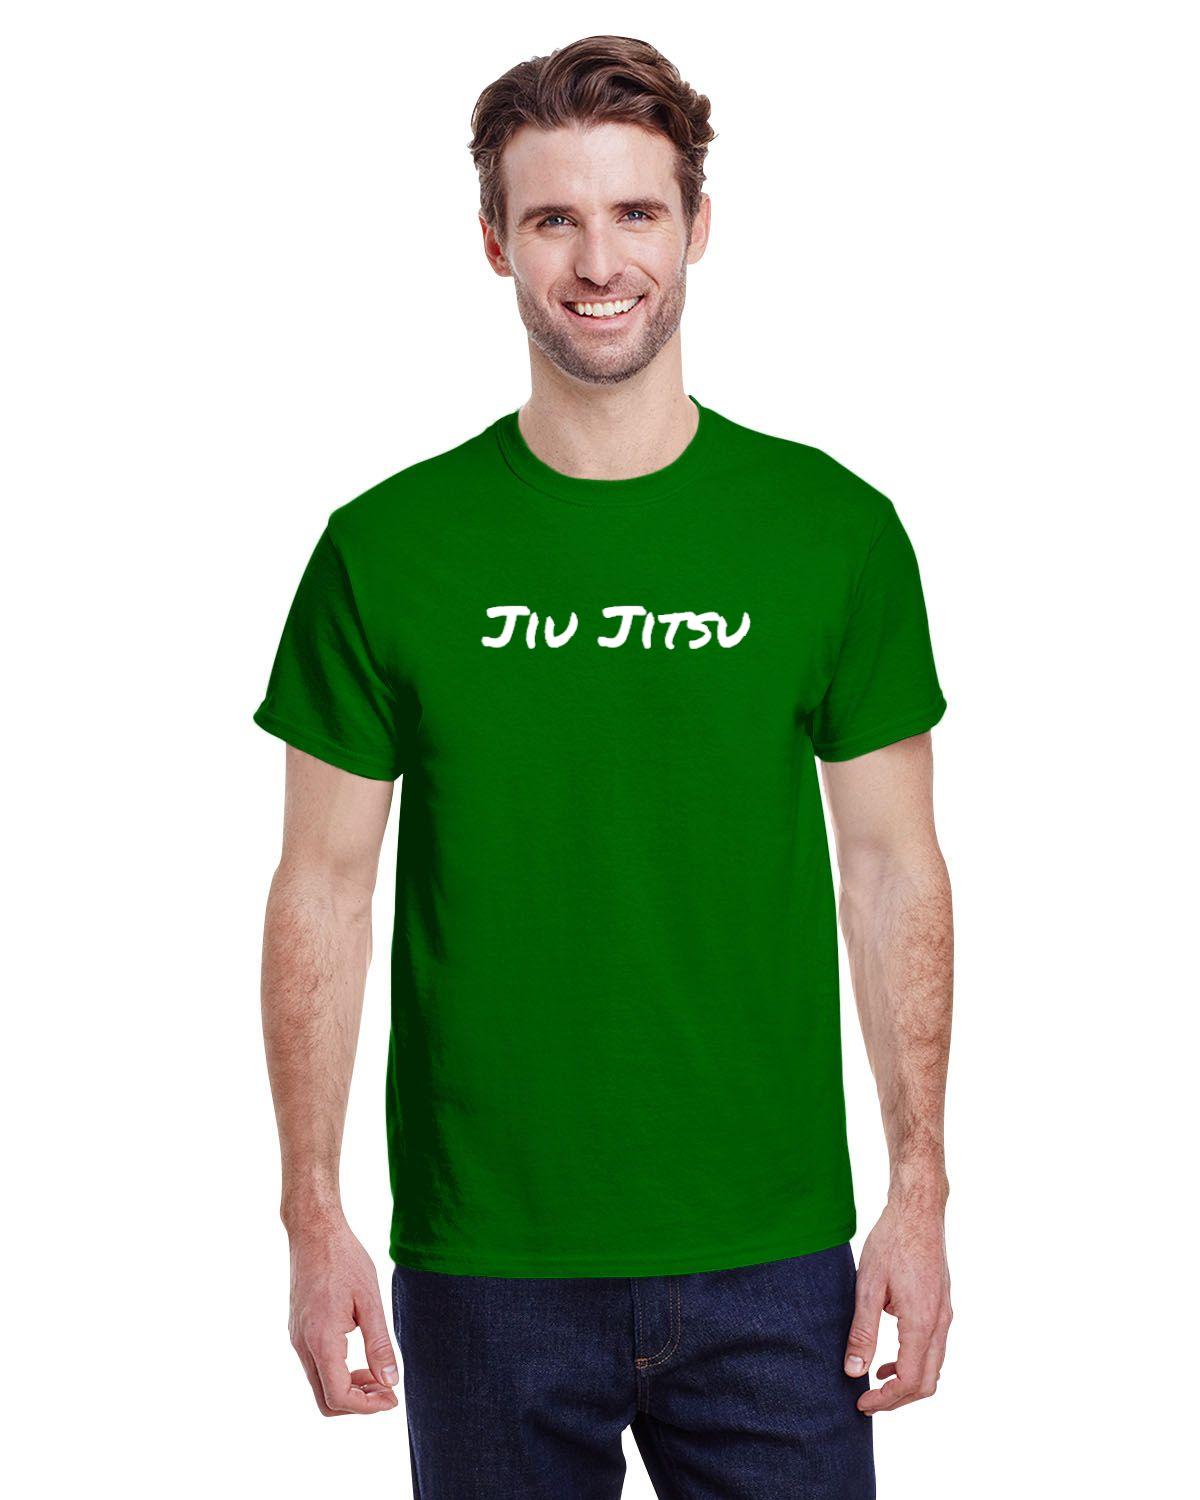 Jiu Jitsu Mens T-Shirt